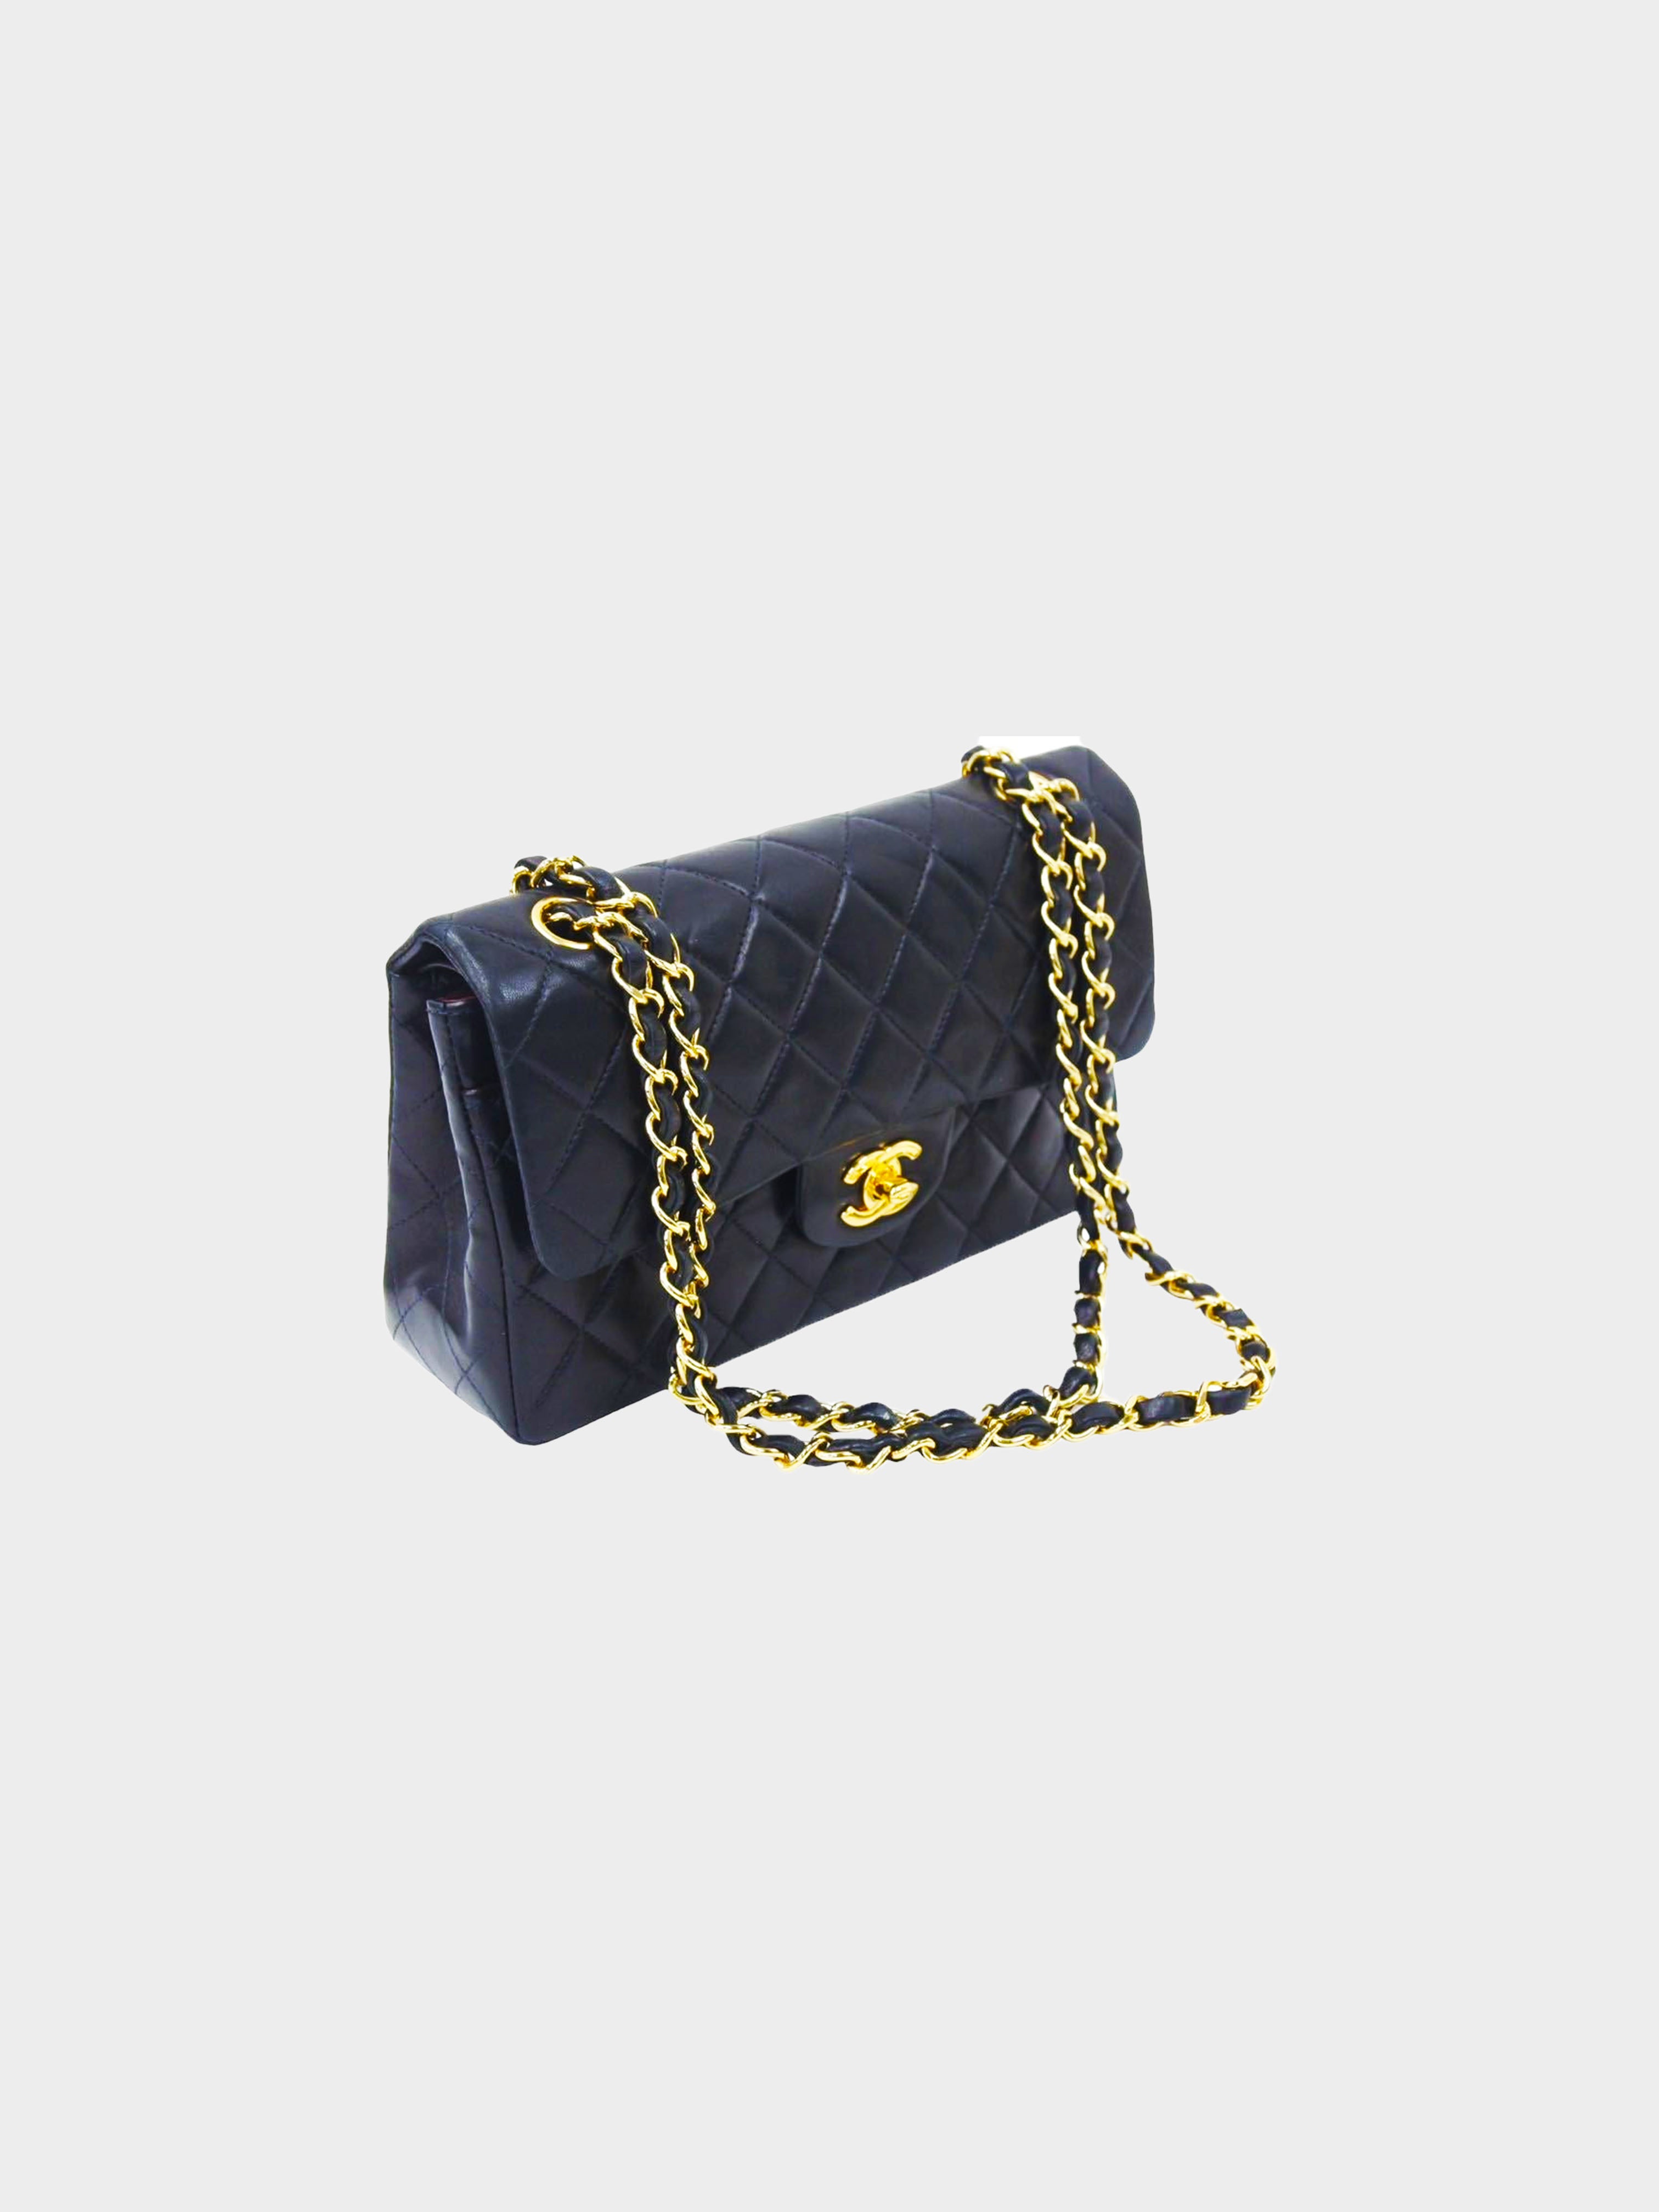 Chanel 2000-2002 Lambskin Flap Shoulder Bag